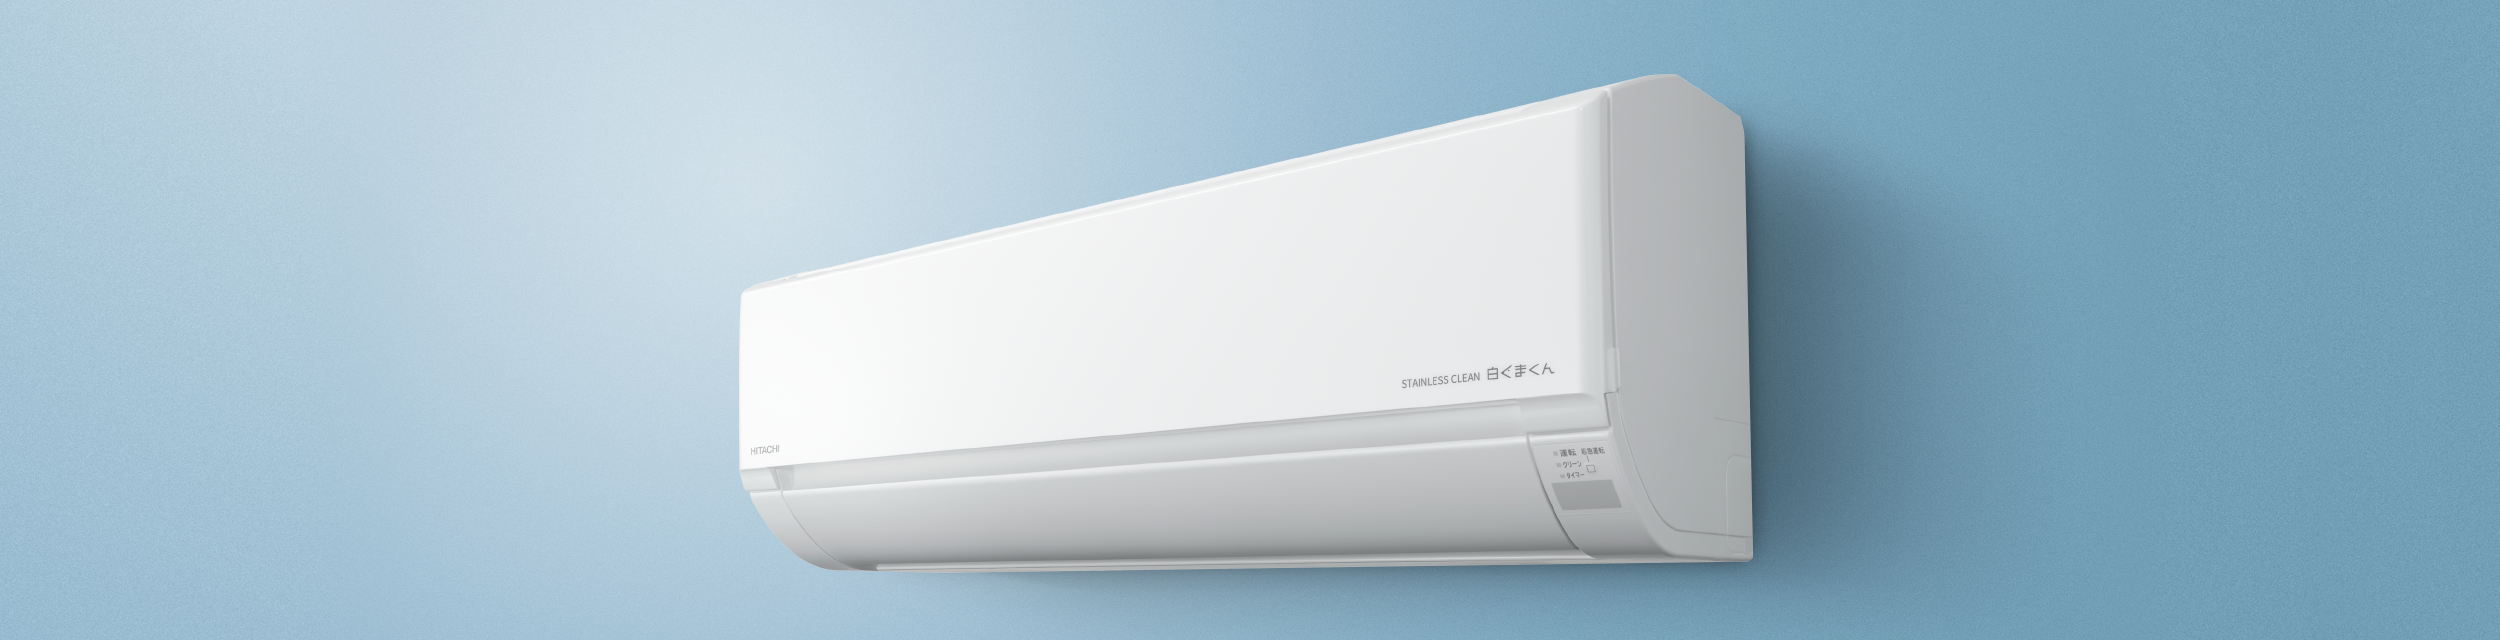 信用 RAS-V40N2-W 白くまくん Vシリーズ 日立 ルームエアコン スタンダードモデル 室内機高さ250mmタイプ 冷房 暖房 